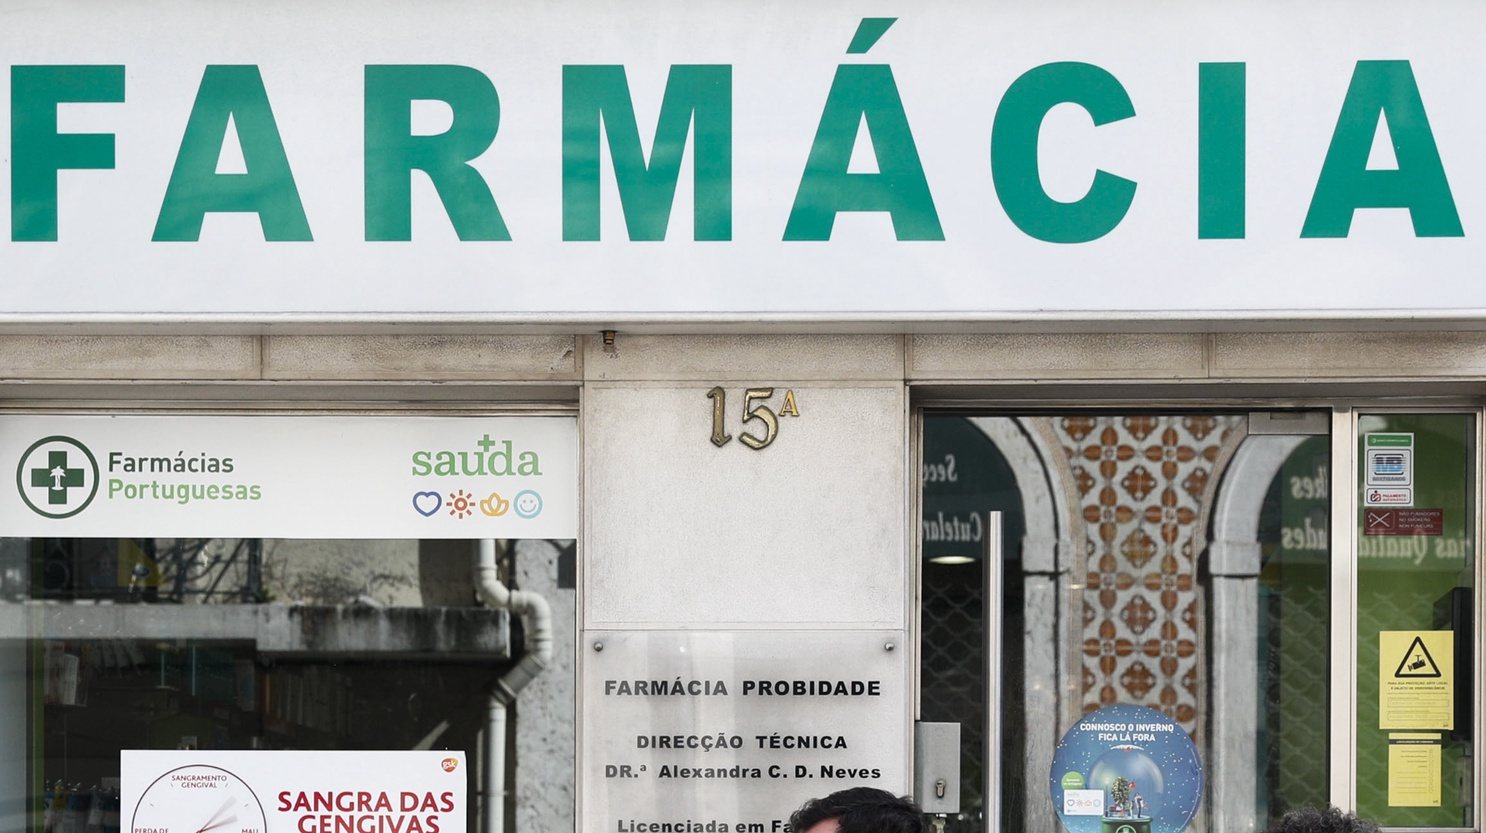 Utentes aguardam pela sua vez à entrada de uma farmácia devido ao Covid-19, em Lisboa, 16 de março de 2020. Segundo a Direção-Geral da Saúde (DGS), em Portugal há 331 casos de pessoas infetadas com a doença Covid-19, registando-se também um morto. ANTÓNIO COTRIM/LUSA